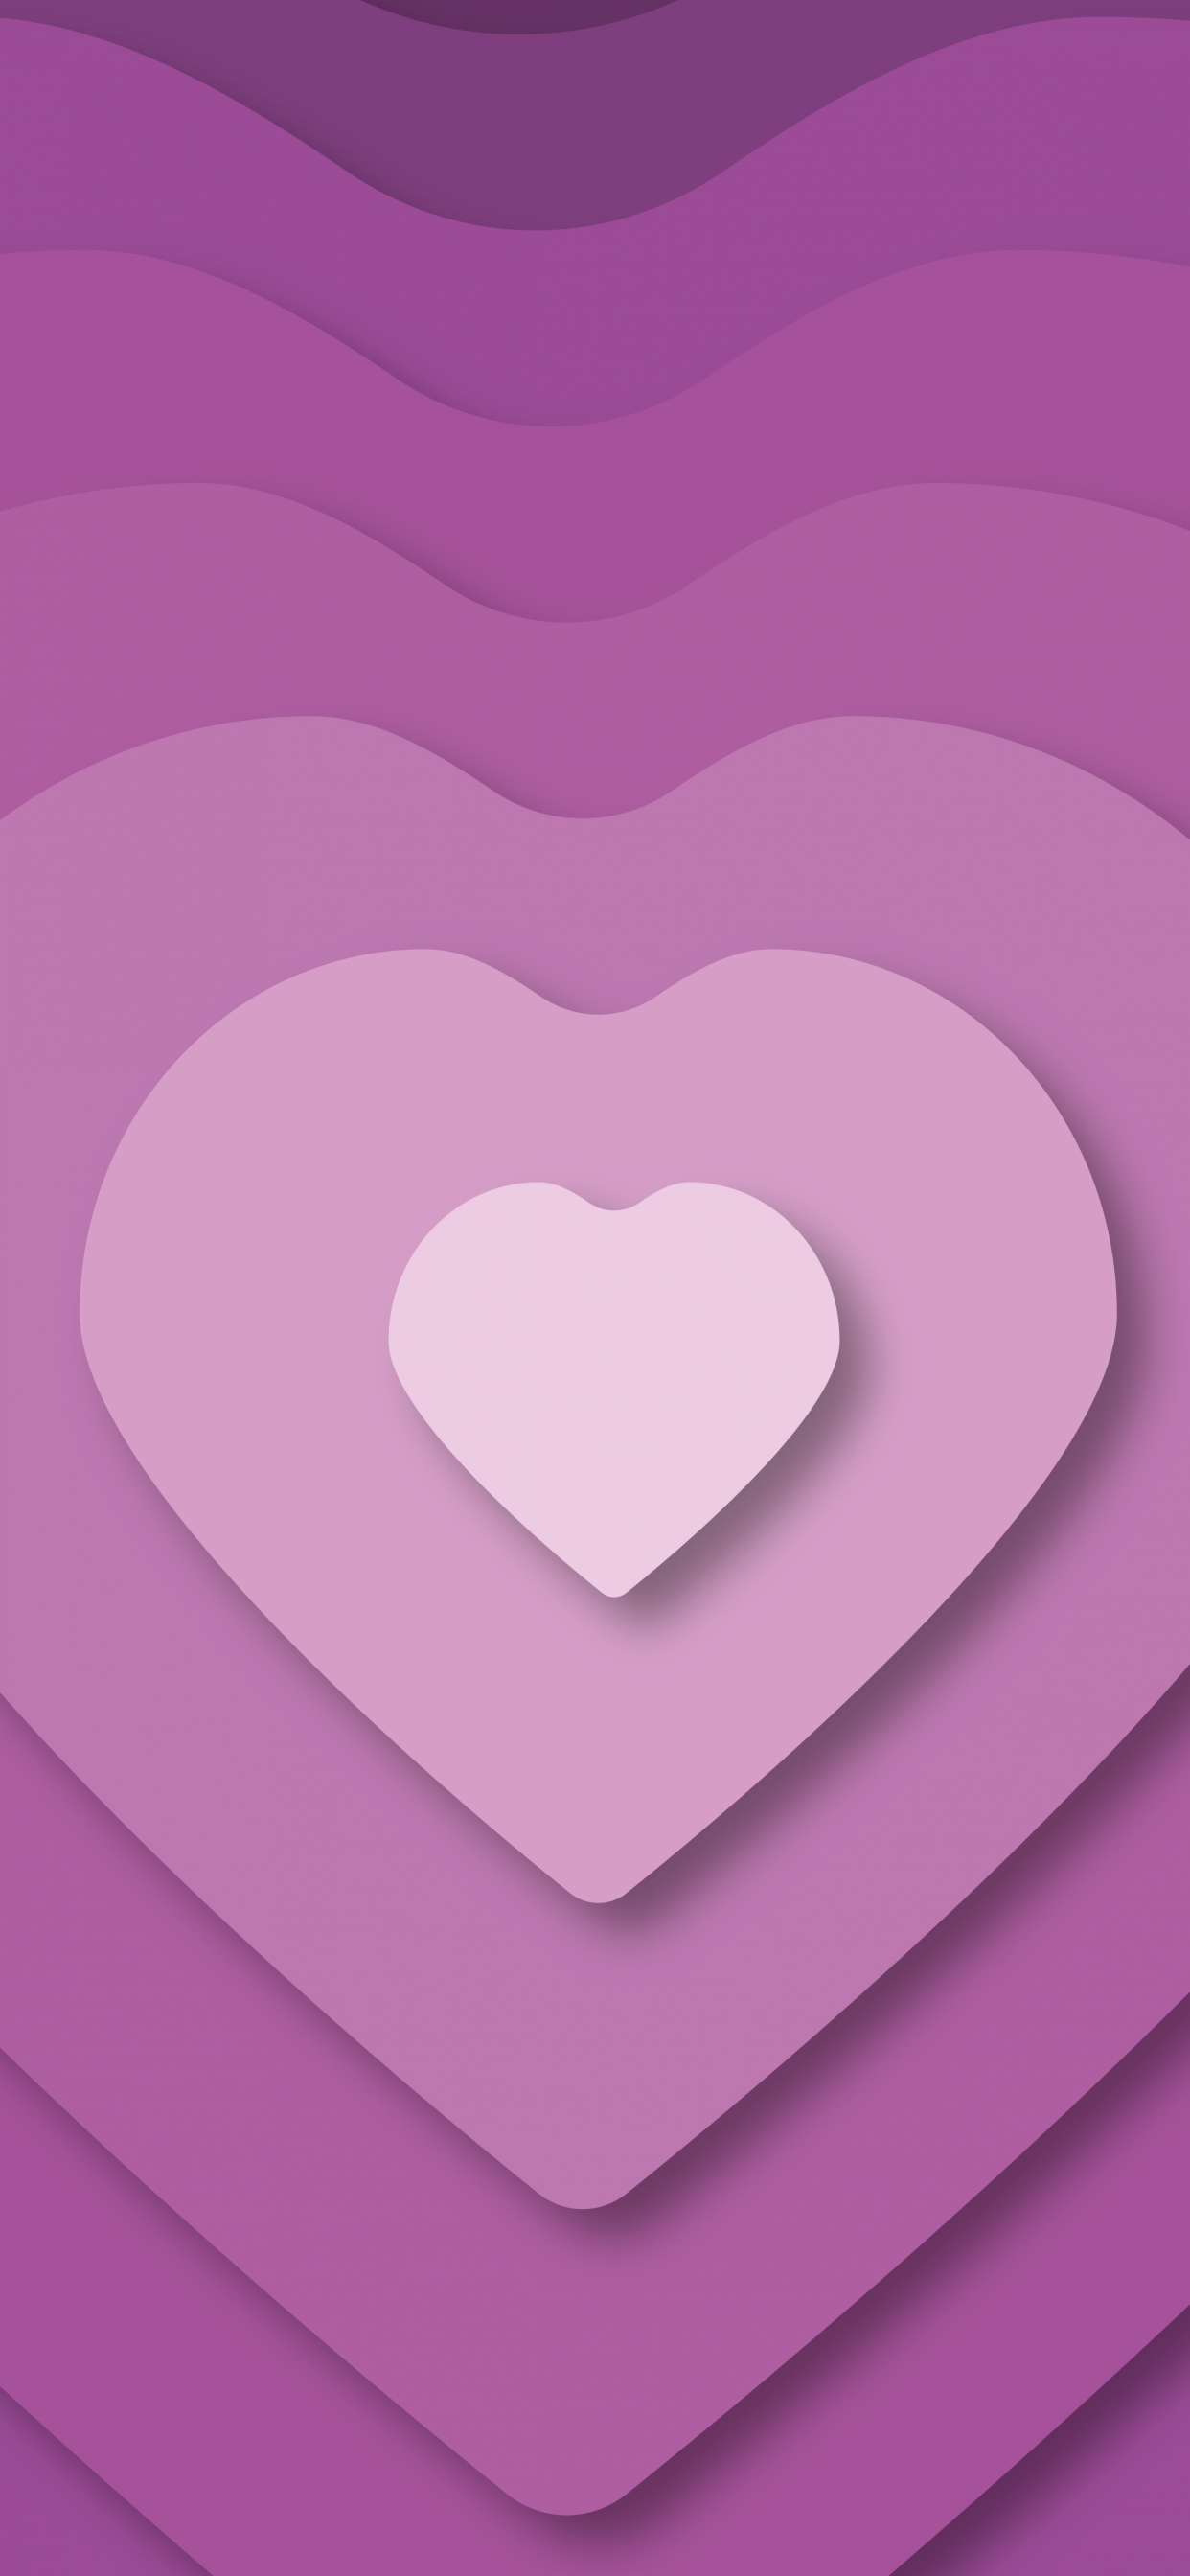 HD purple heart wallpapers | Peakpx